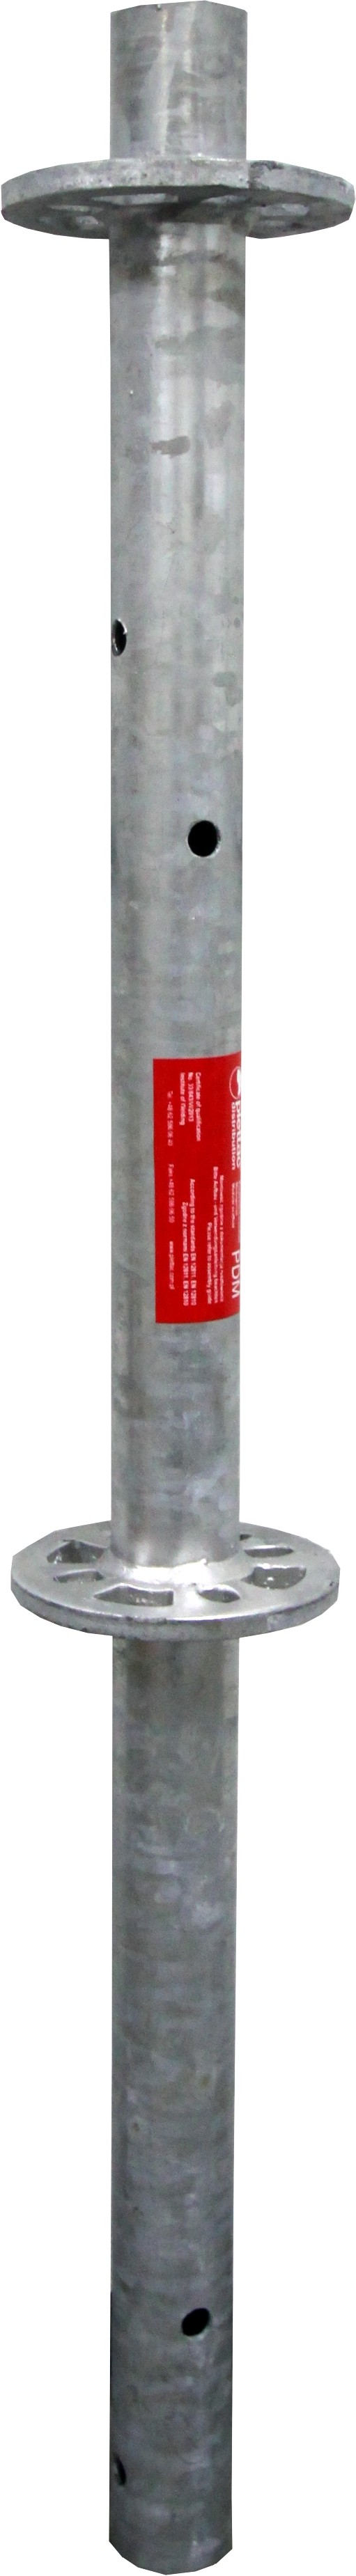 plettac distribution - Vertikalstiel ohne Rohrverbinder